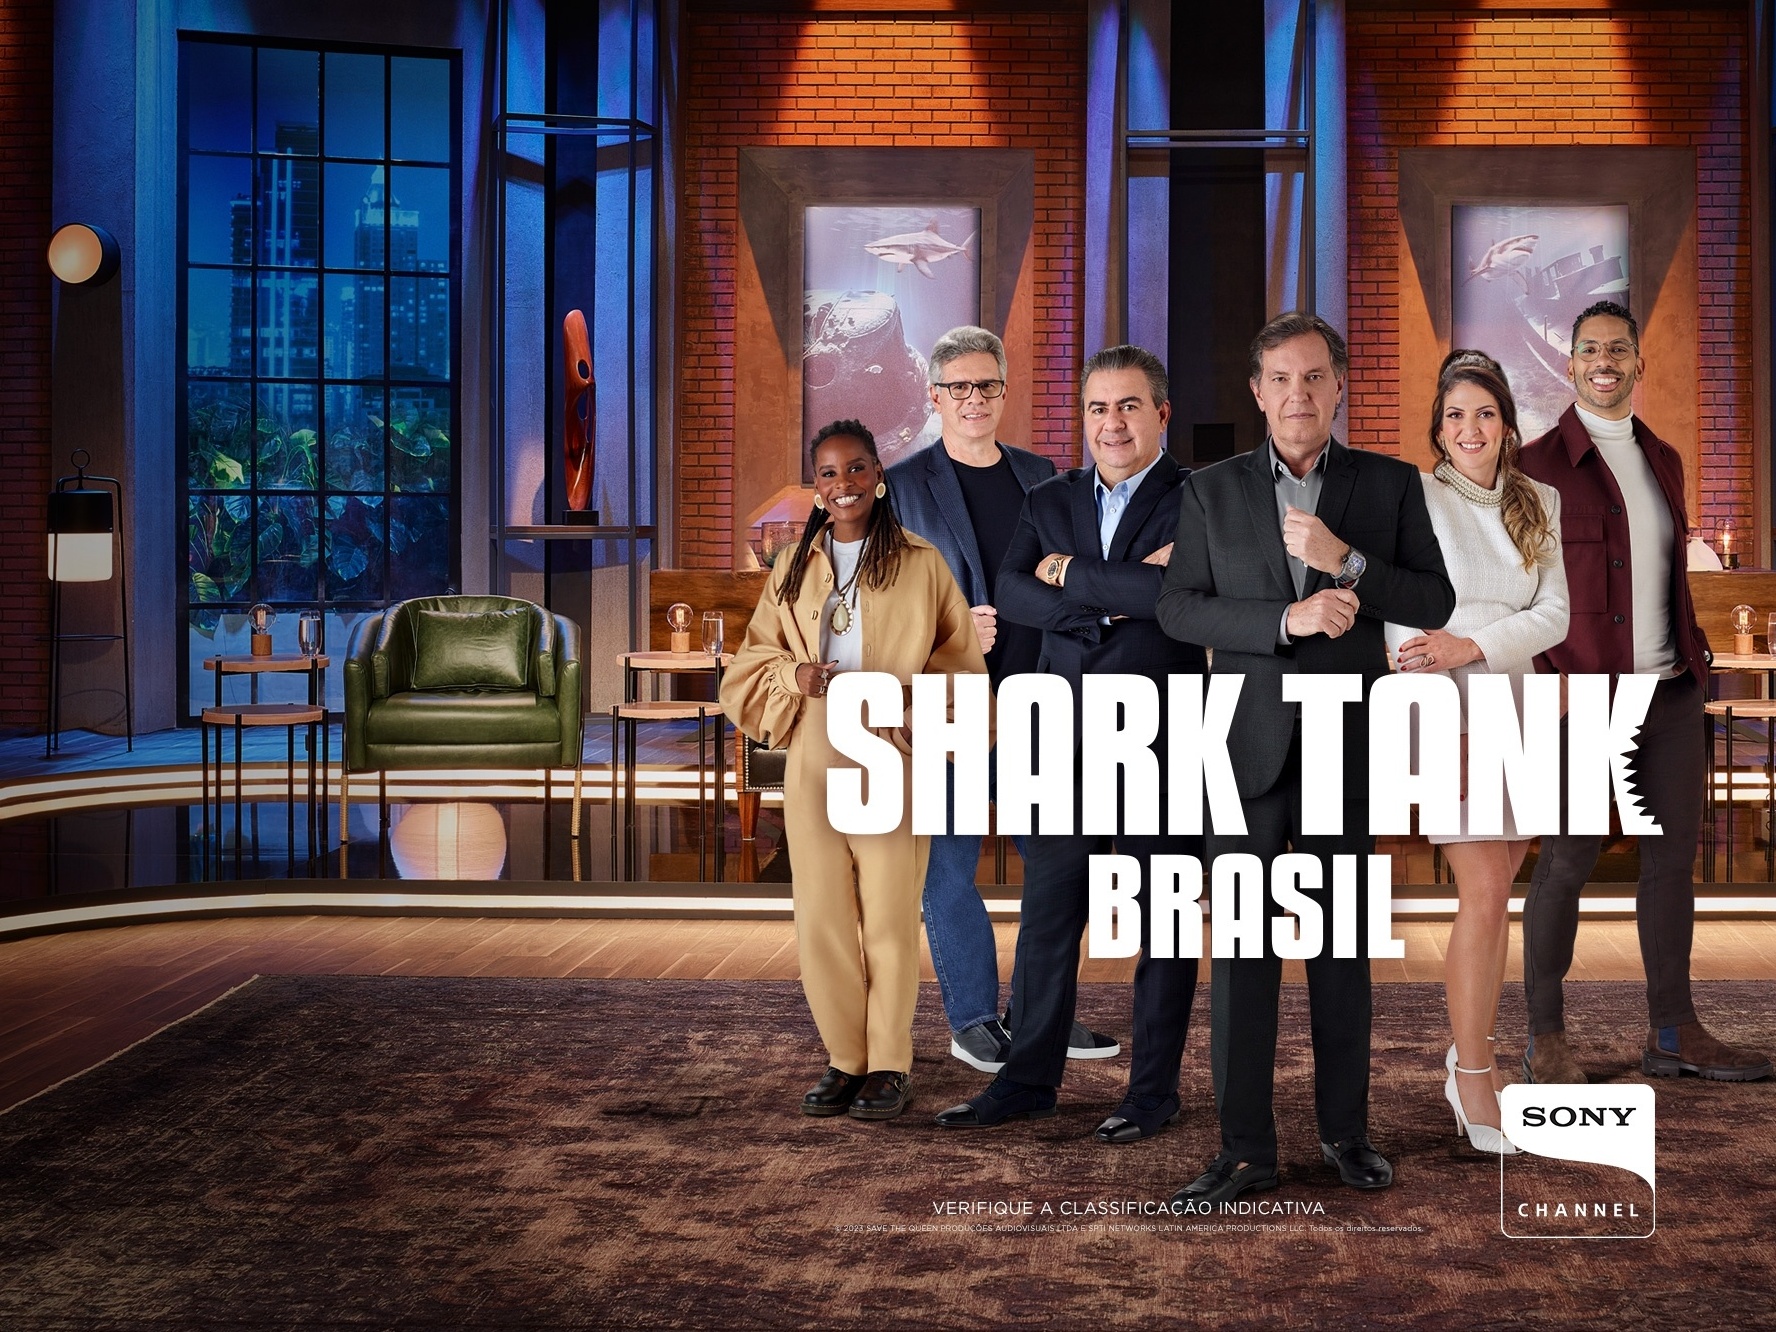 Shark Tank Brasil 8ª Temporada: Novos negócios inovadores e personalizados  — Eightify